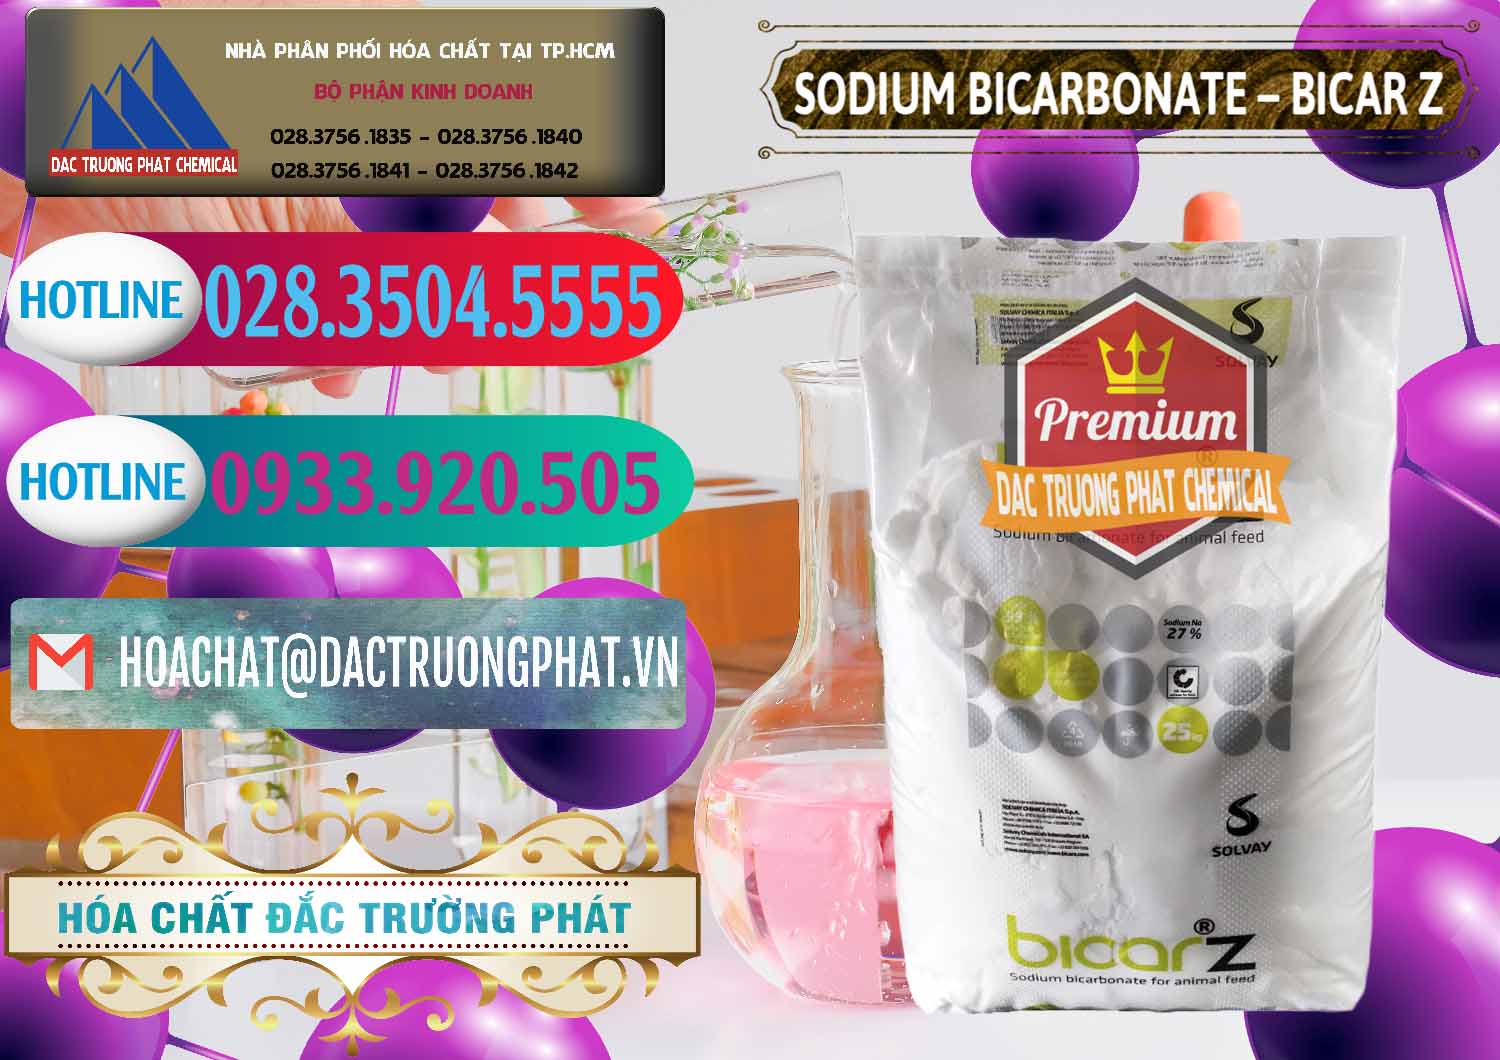 Nơi chuyên bán _ phân phối Sodium Bicarbonate – NaHCO3 Bicar Z Ý Italy Solvay - 0139 - Công ty chuyên nhập khẩu - phân phối hóa chất tại TP.HCM - truongphat.vn